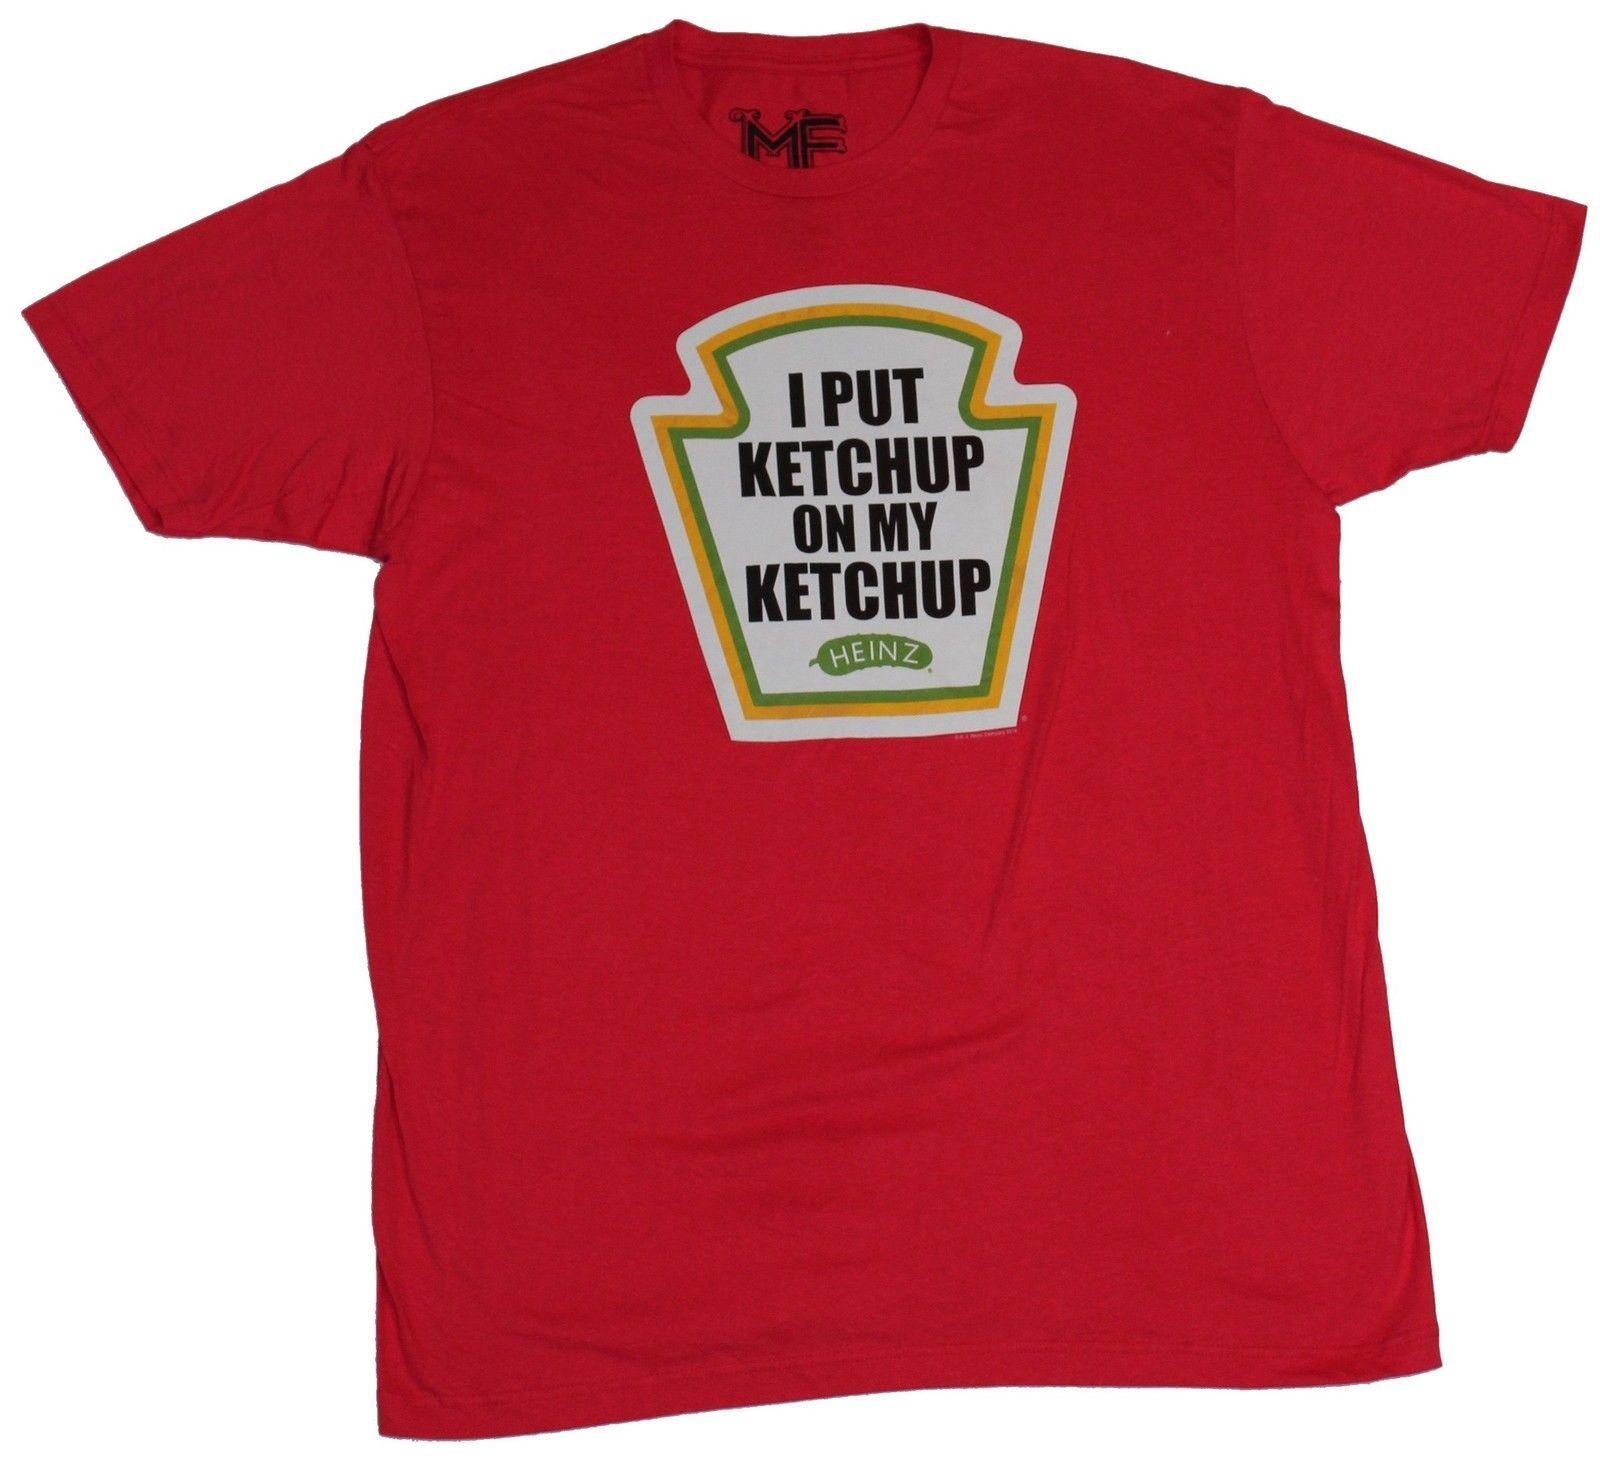 Ketchup Logo - Details about Heinz Ketchup Mens T-Shirt - I Put Ketchup on My Ketchup Logo  Image